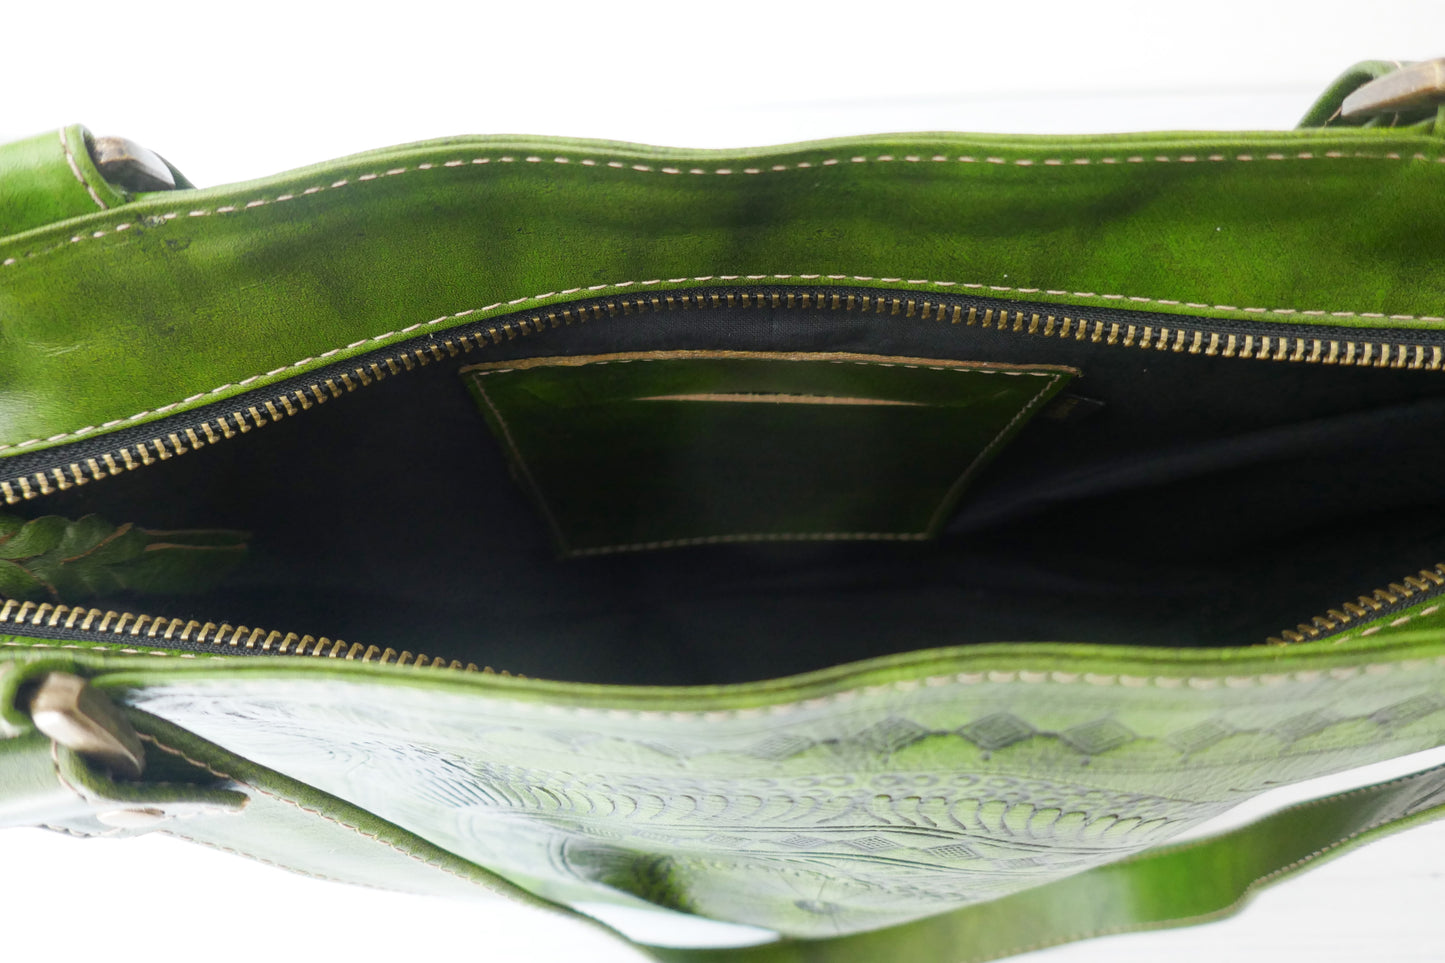 Green Mandala Tote Bag